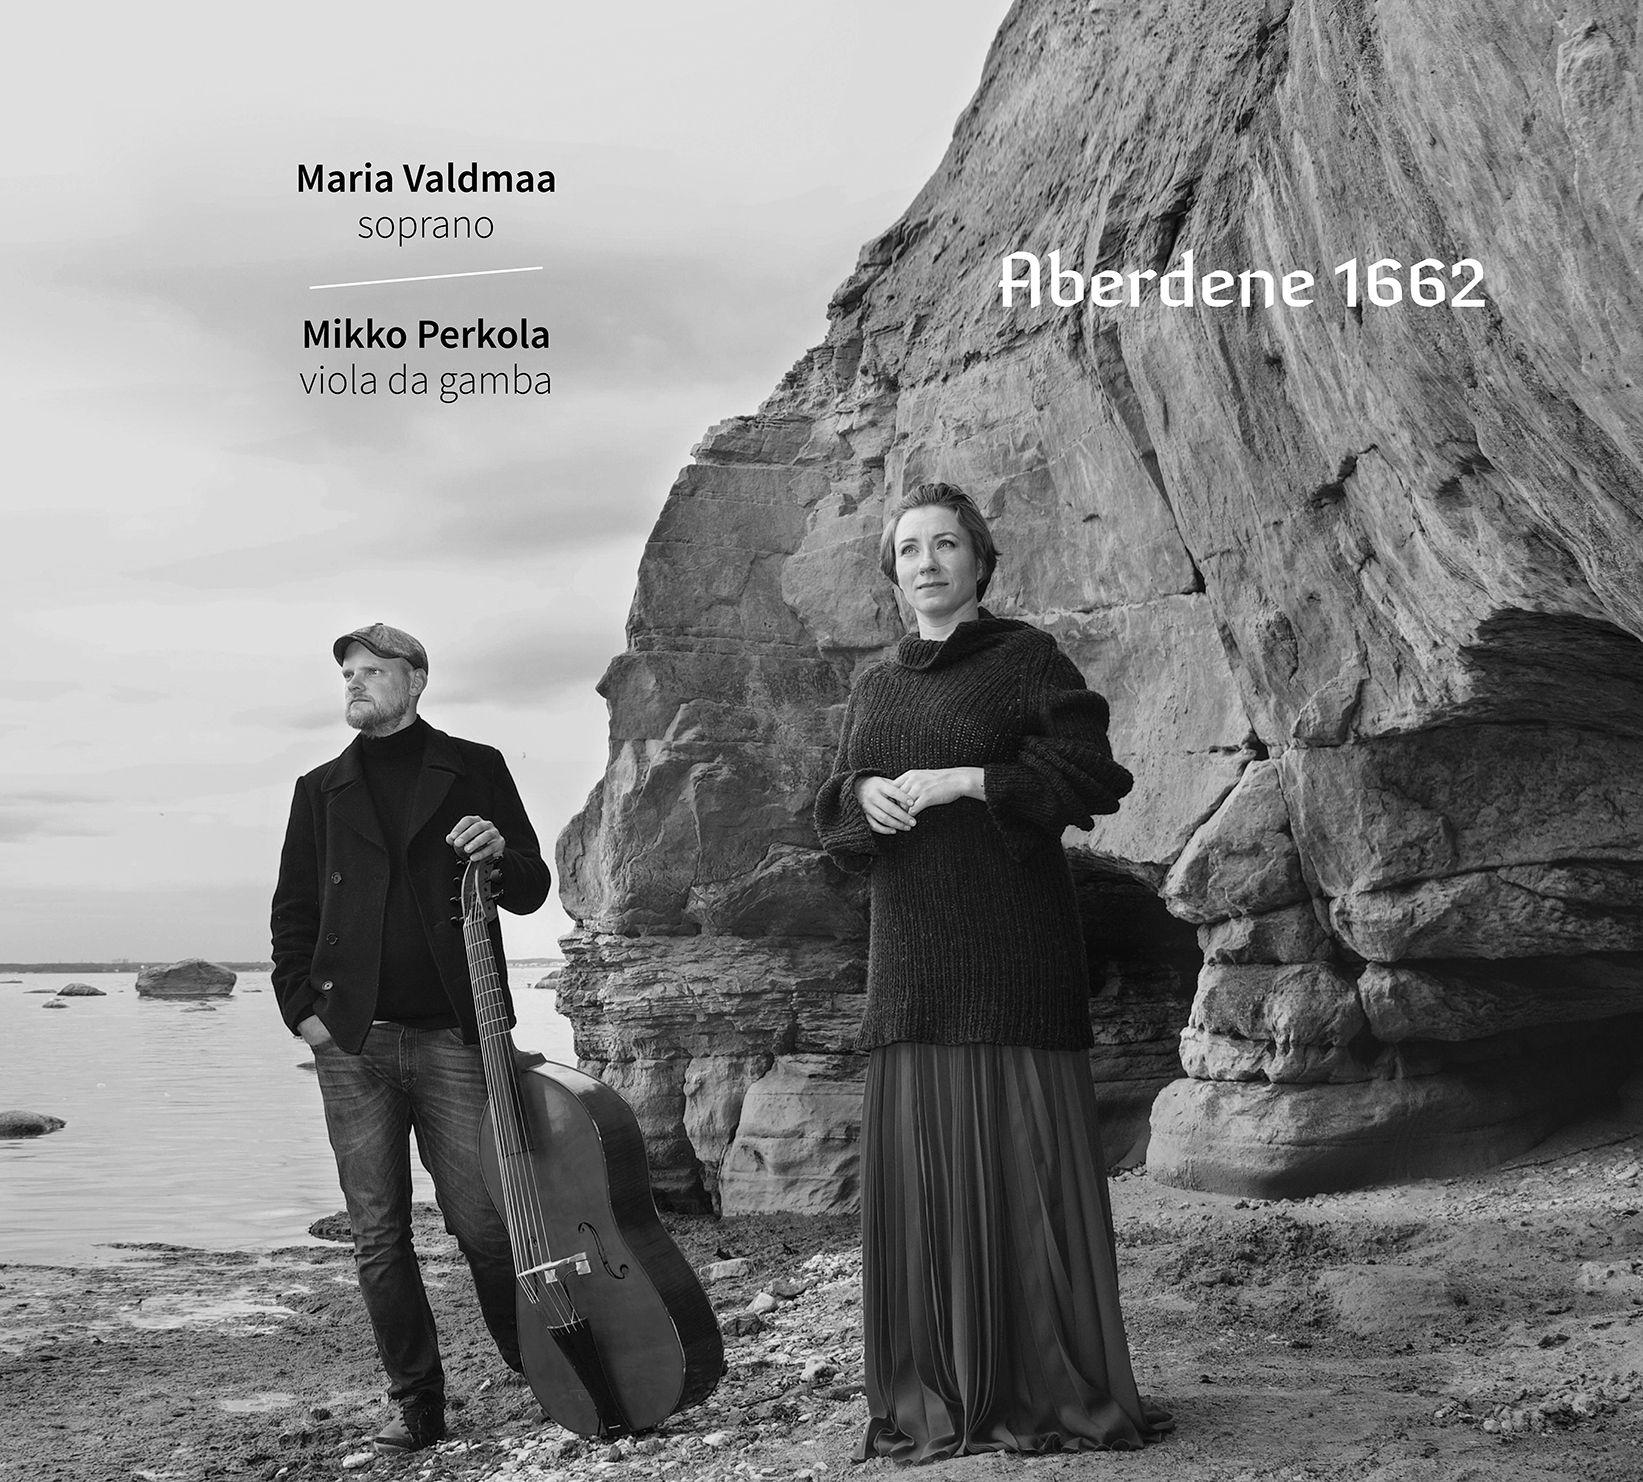 MARIA VALDMAA & MIKKO PERKOLA - ABERDENE 1662 (2020) CD